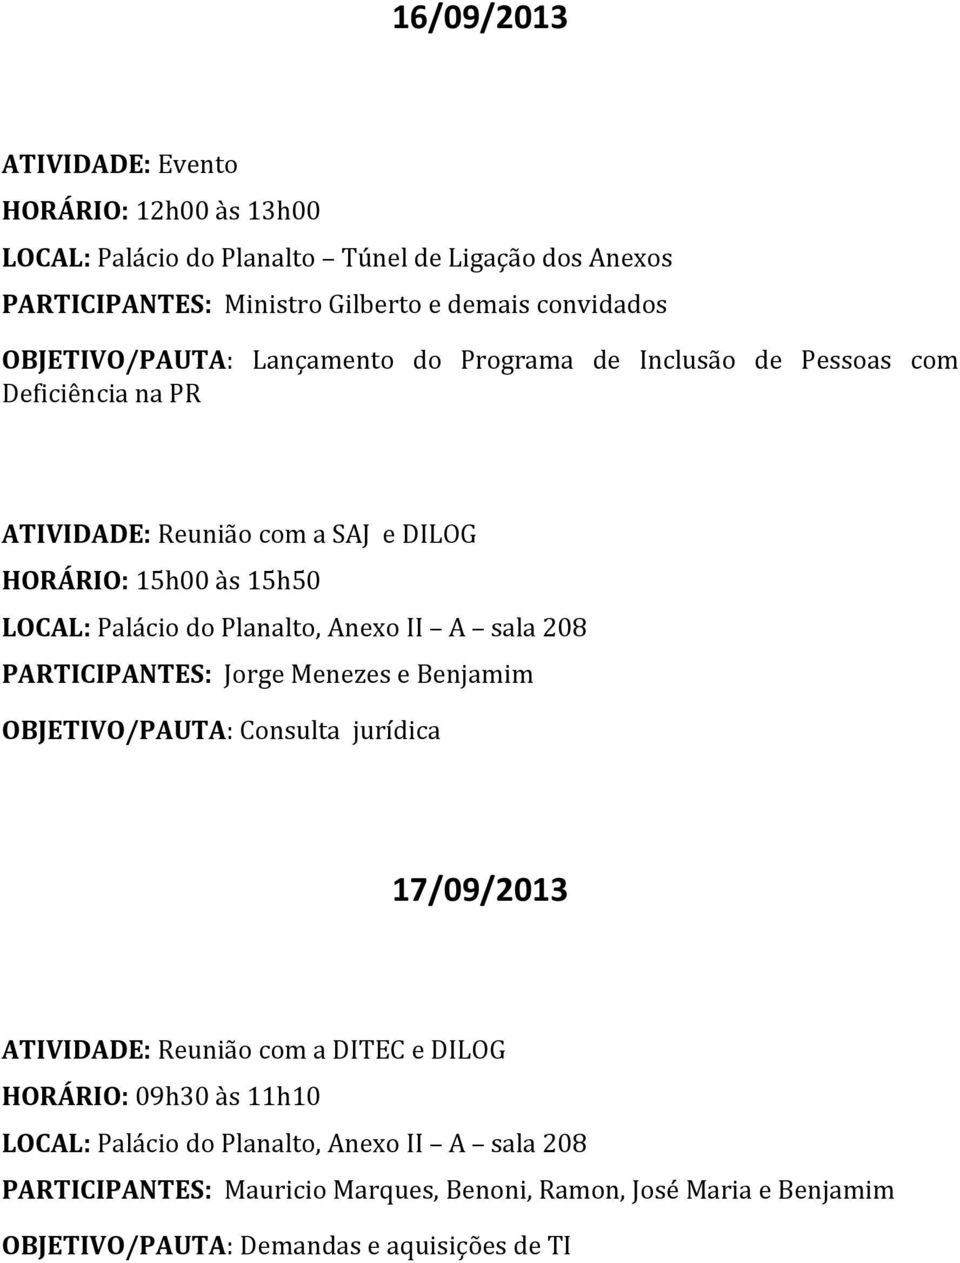 HORÁRIO: 15h00 às 15h50 PARTICIPANTES: Jorge Menezes e Benjamim OBJETIVO/PAUTA: Consulta jurídica 17/09/2013 com a DITEC e DILOG